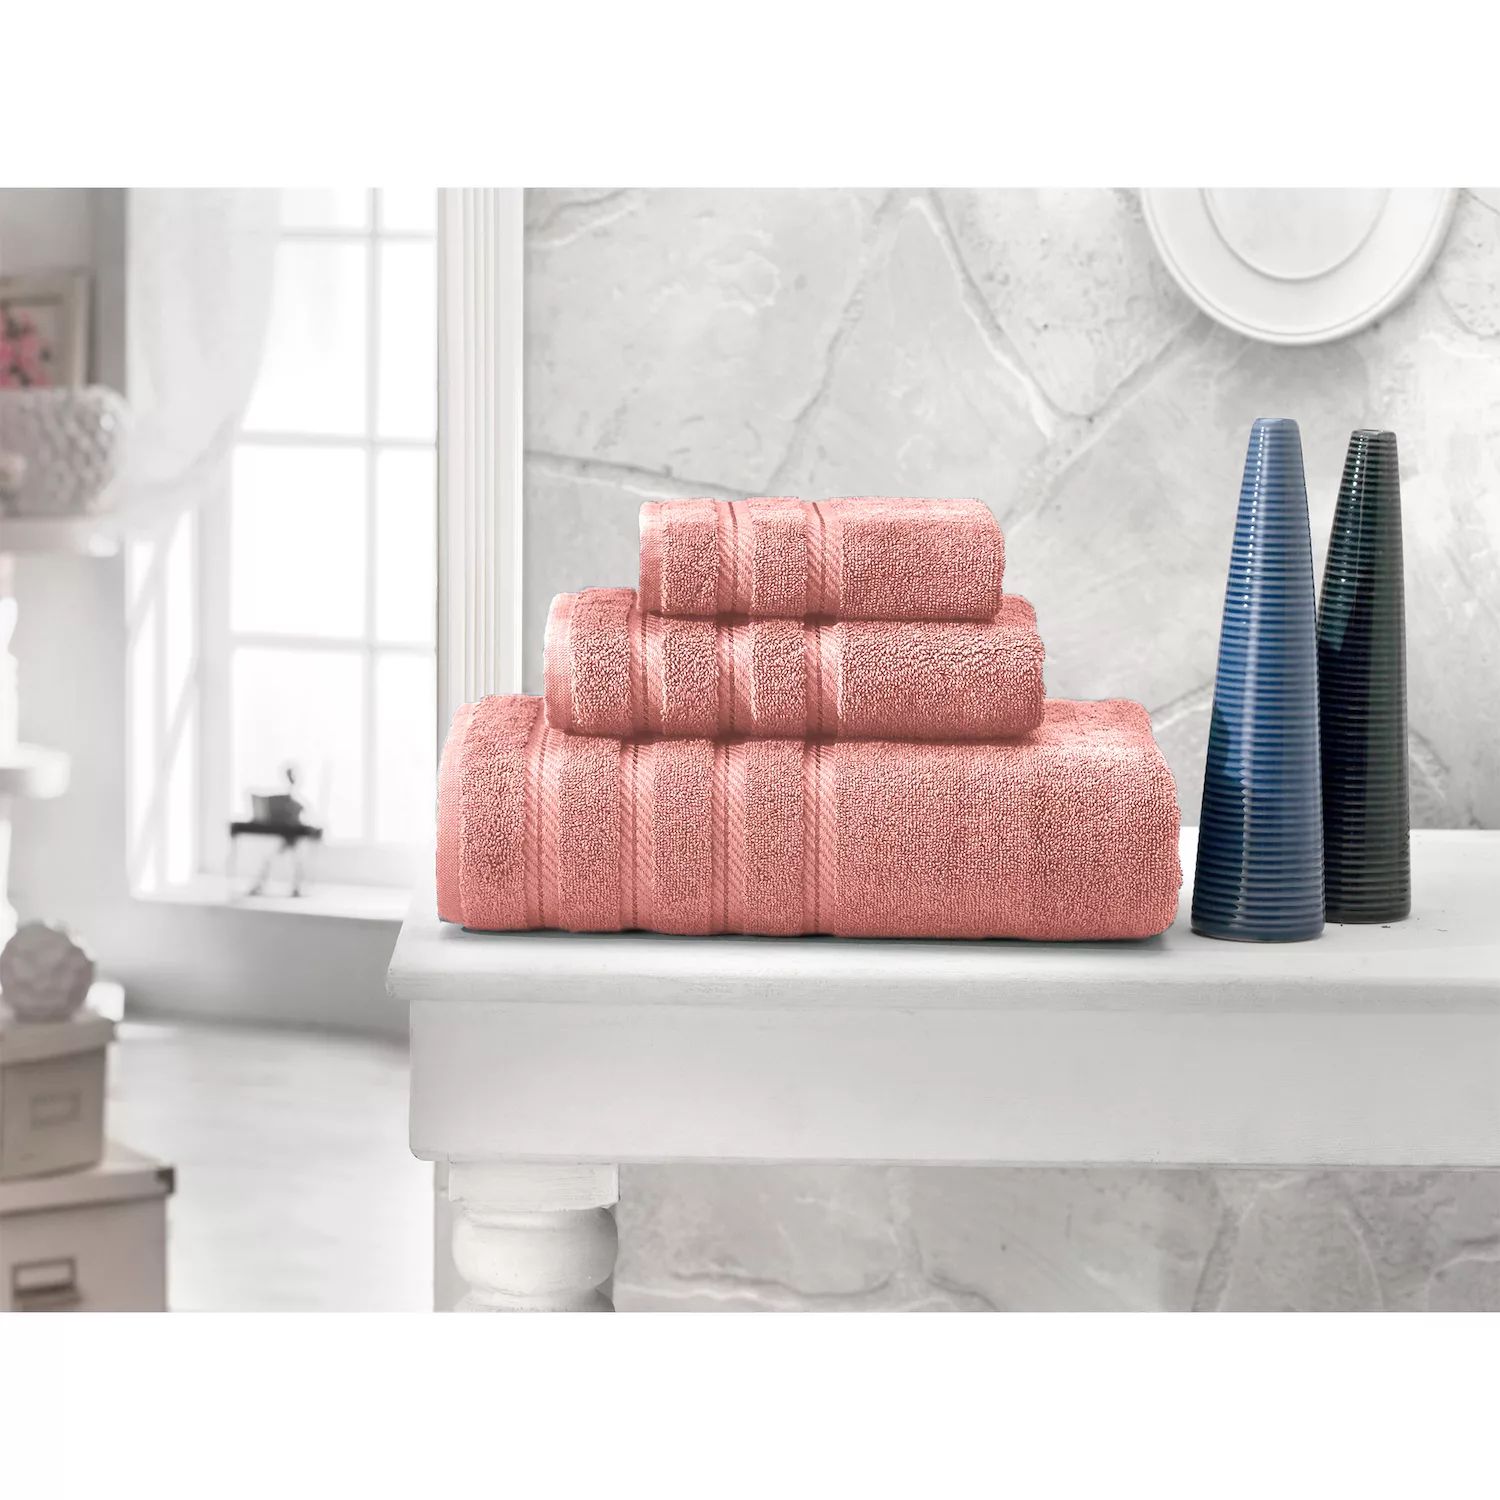 Классические турецкие полотенца из натурального хлопка с мягкой впитывающей способностью Анталия, набор из 12 предметов: 4 банных полотенца, 4 полотенца для рук, 4 мочалки, зеленый 2pcs turkish towel set bath towel hand towel set hotel